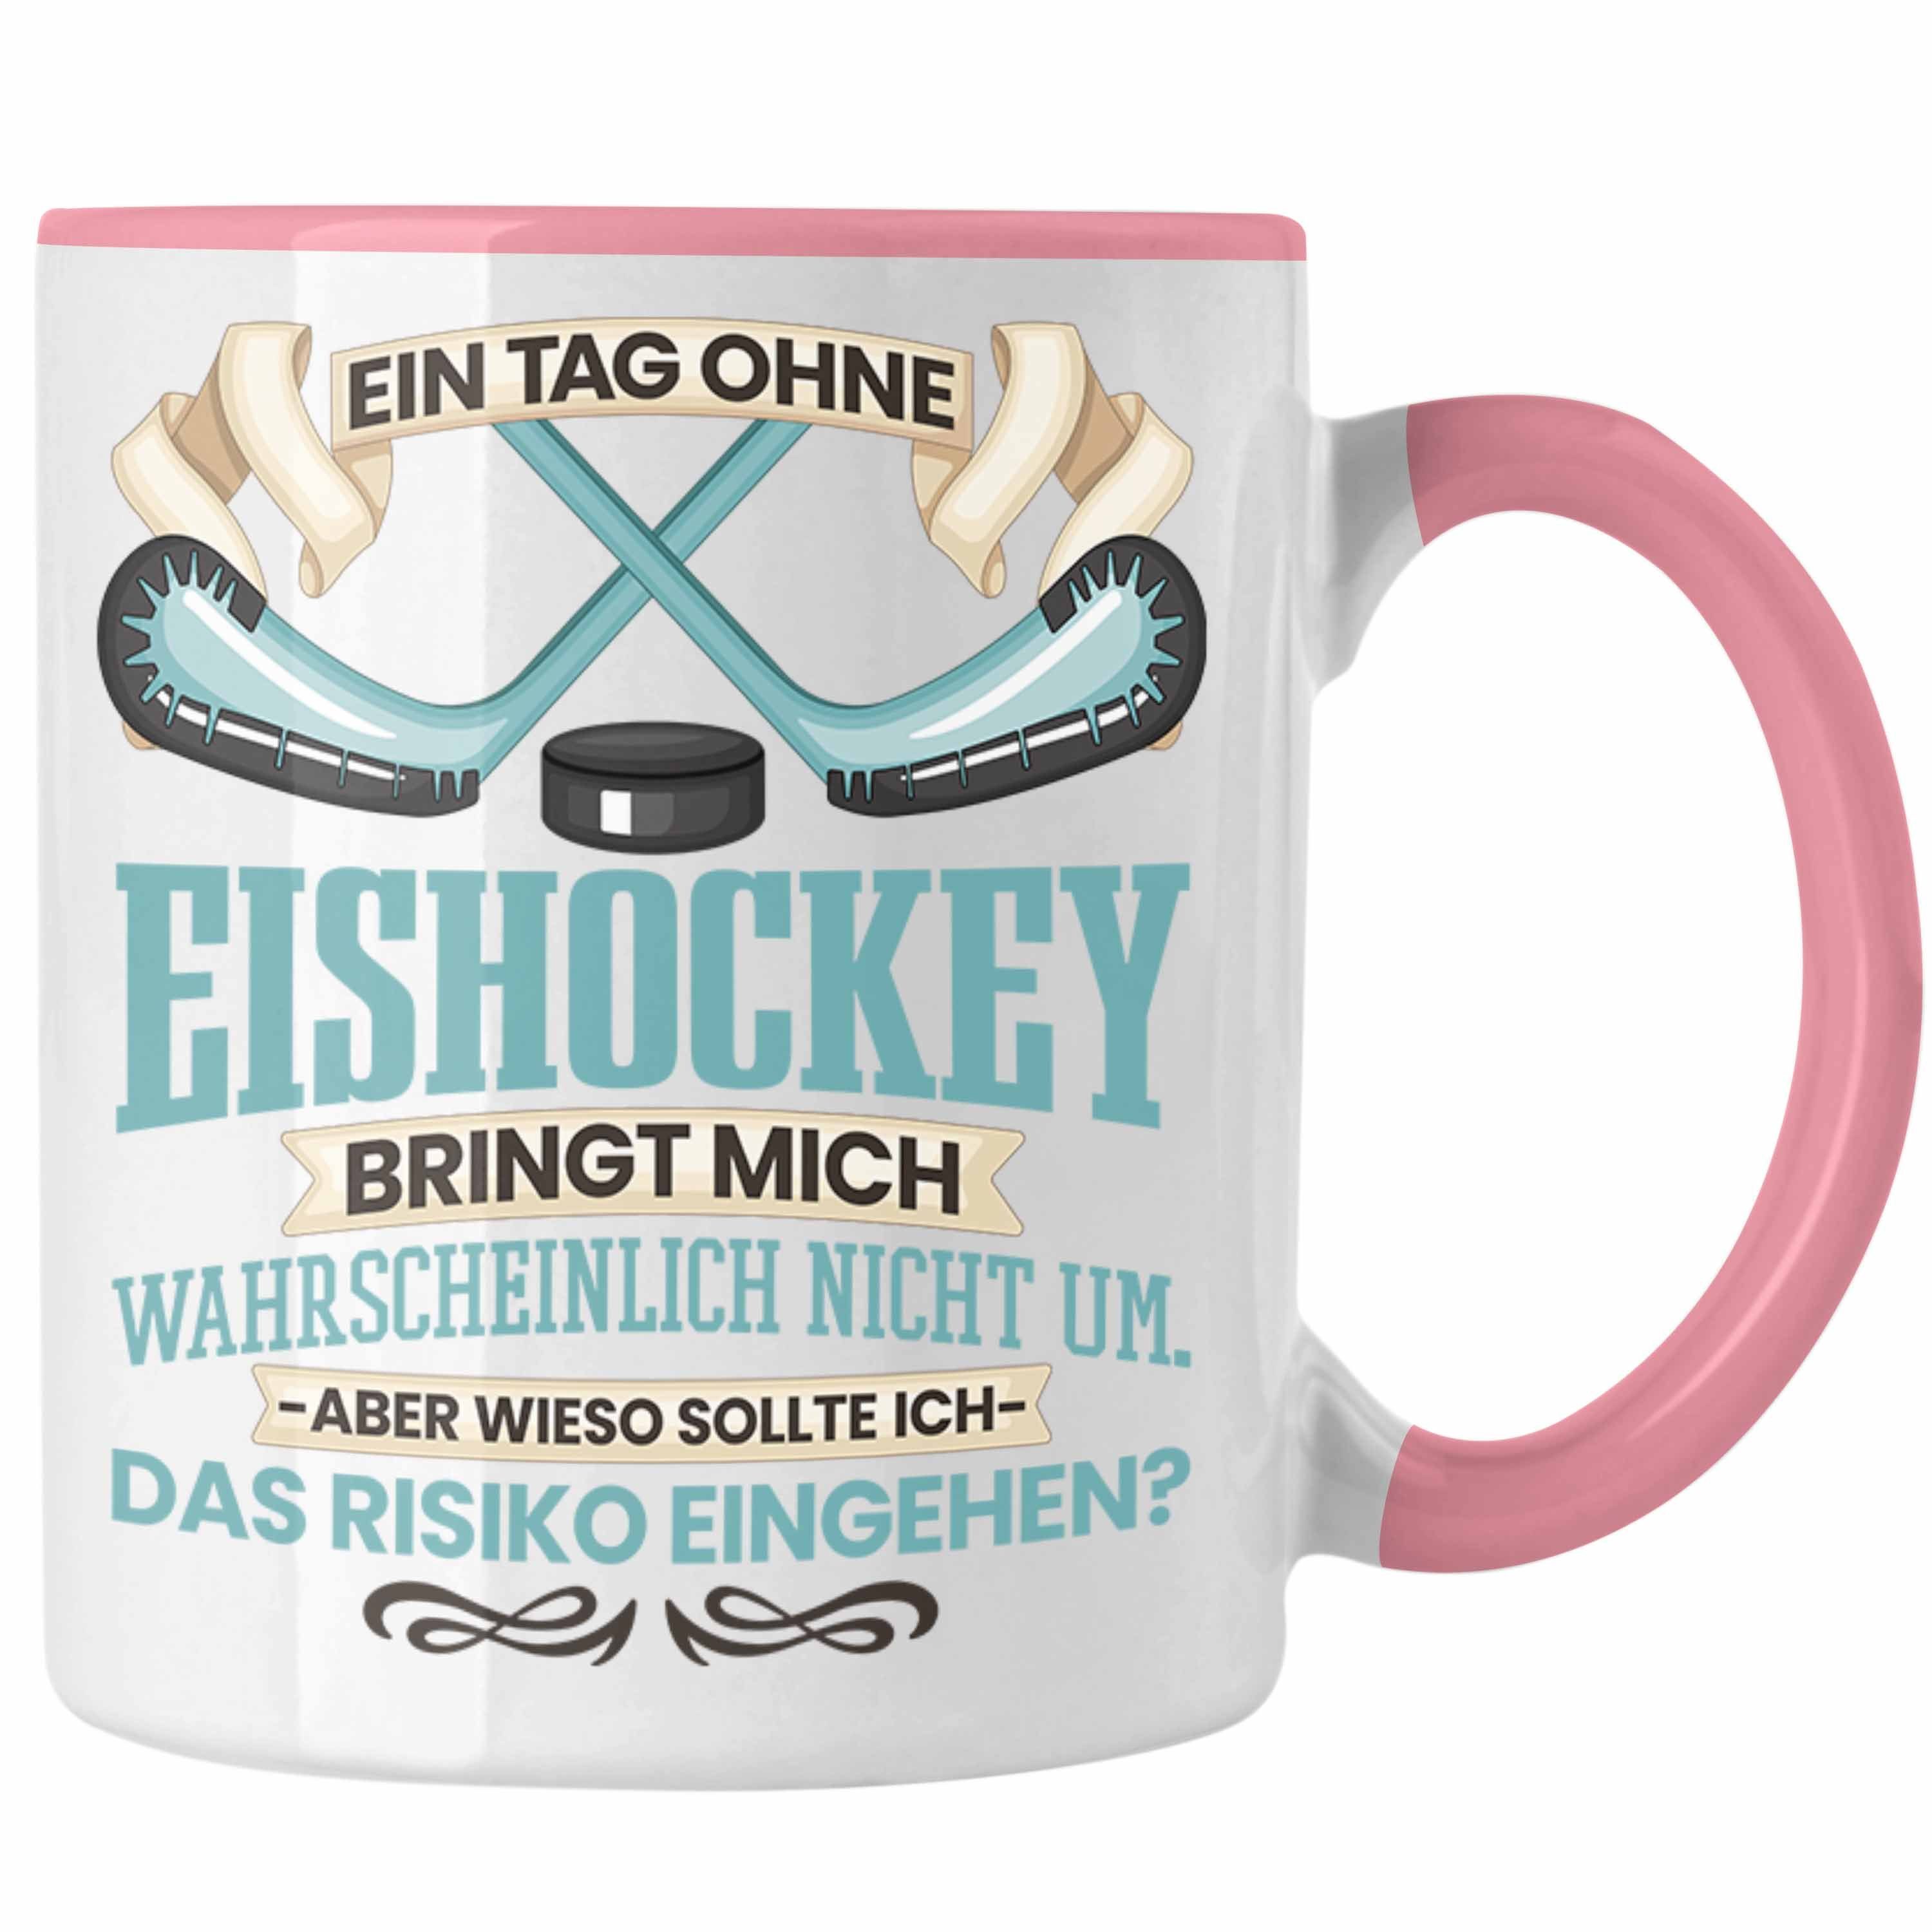 Trendation Tasse Ein - Geschenk Eishockey Tasse Trendation für Rosa Coach Eishockey-Spieler